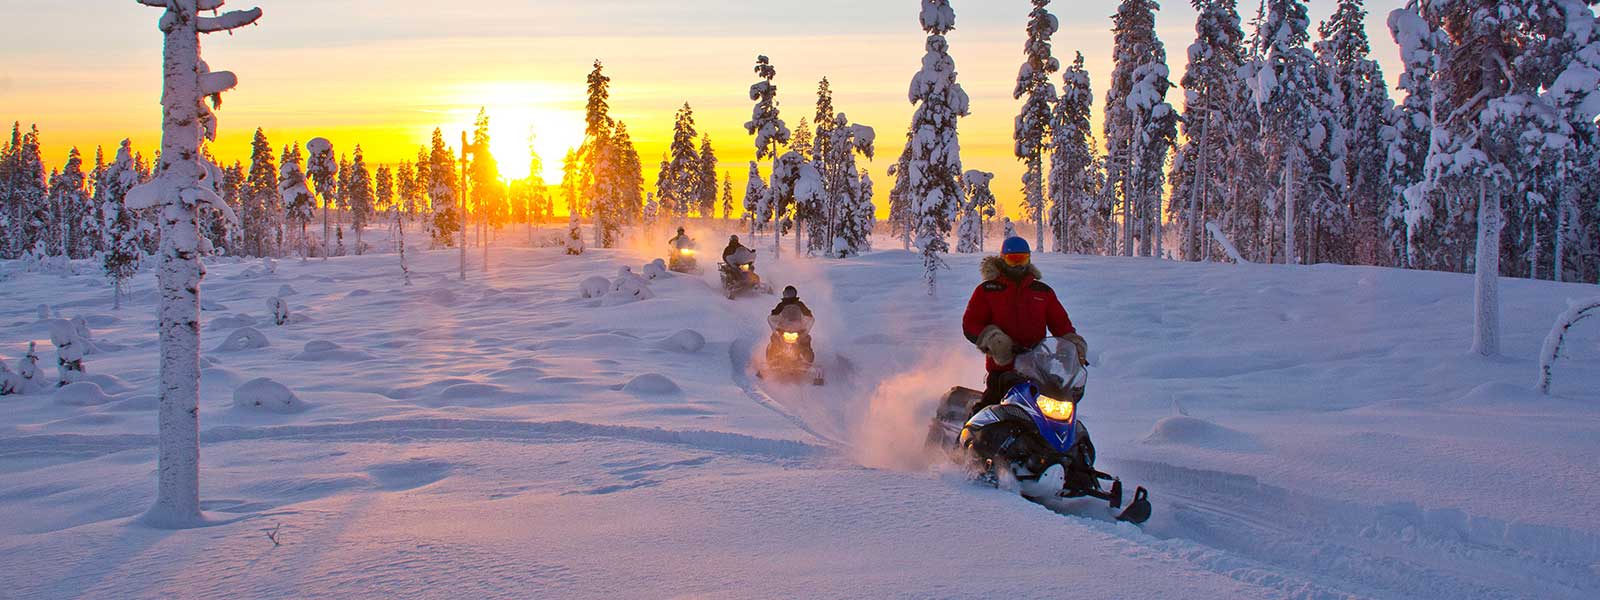 Op een sneeuwscooter tijdens een vakantie in Lapland